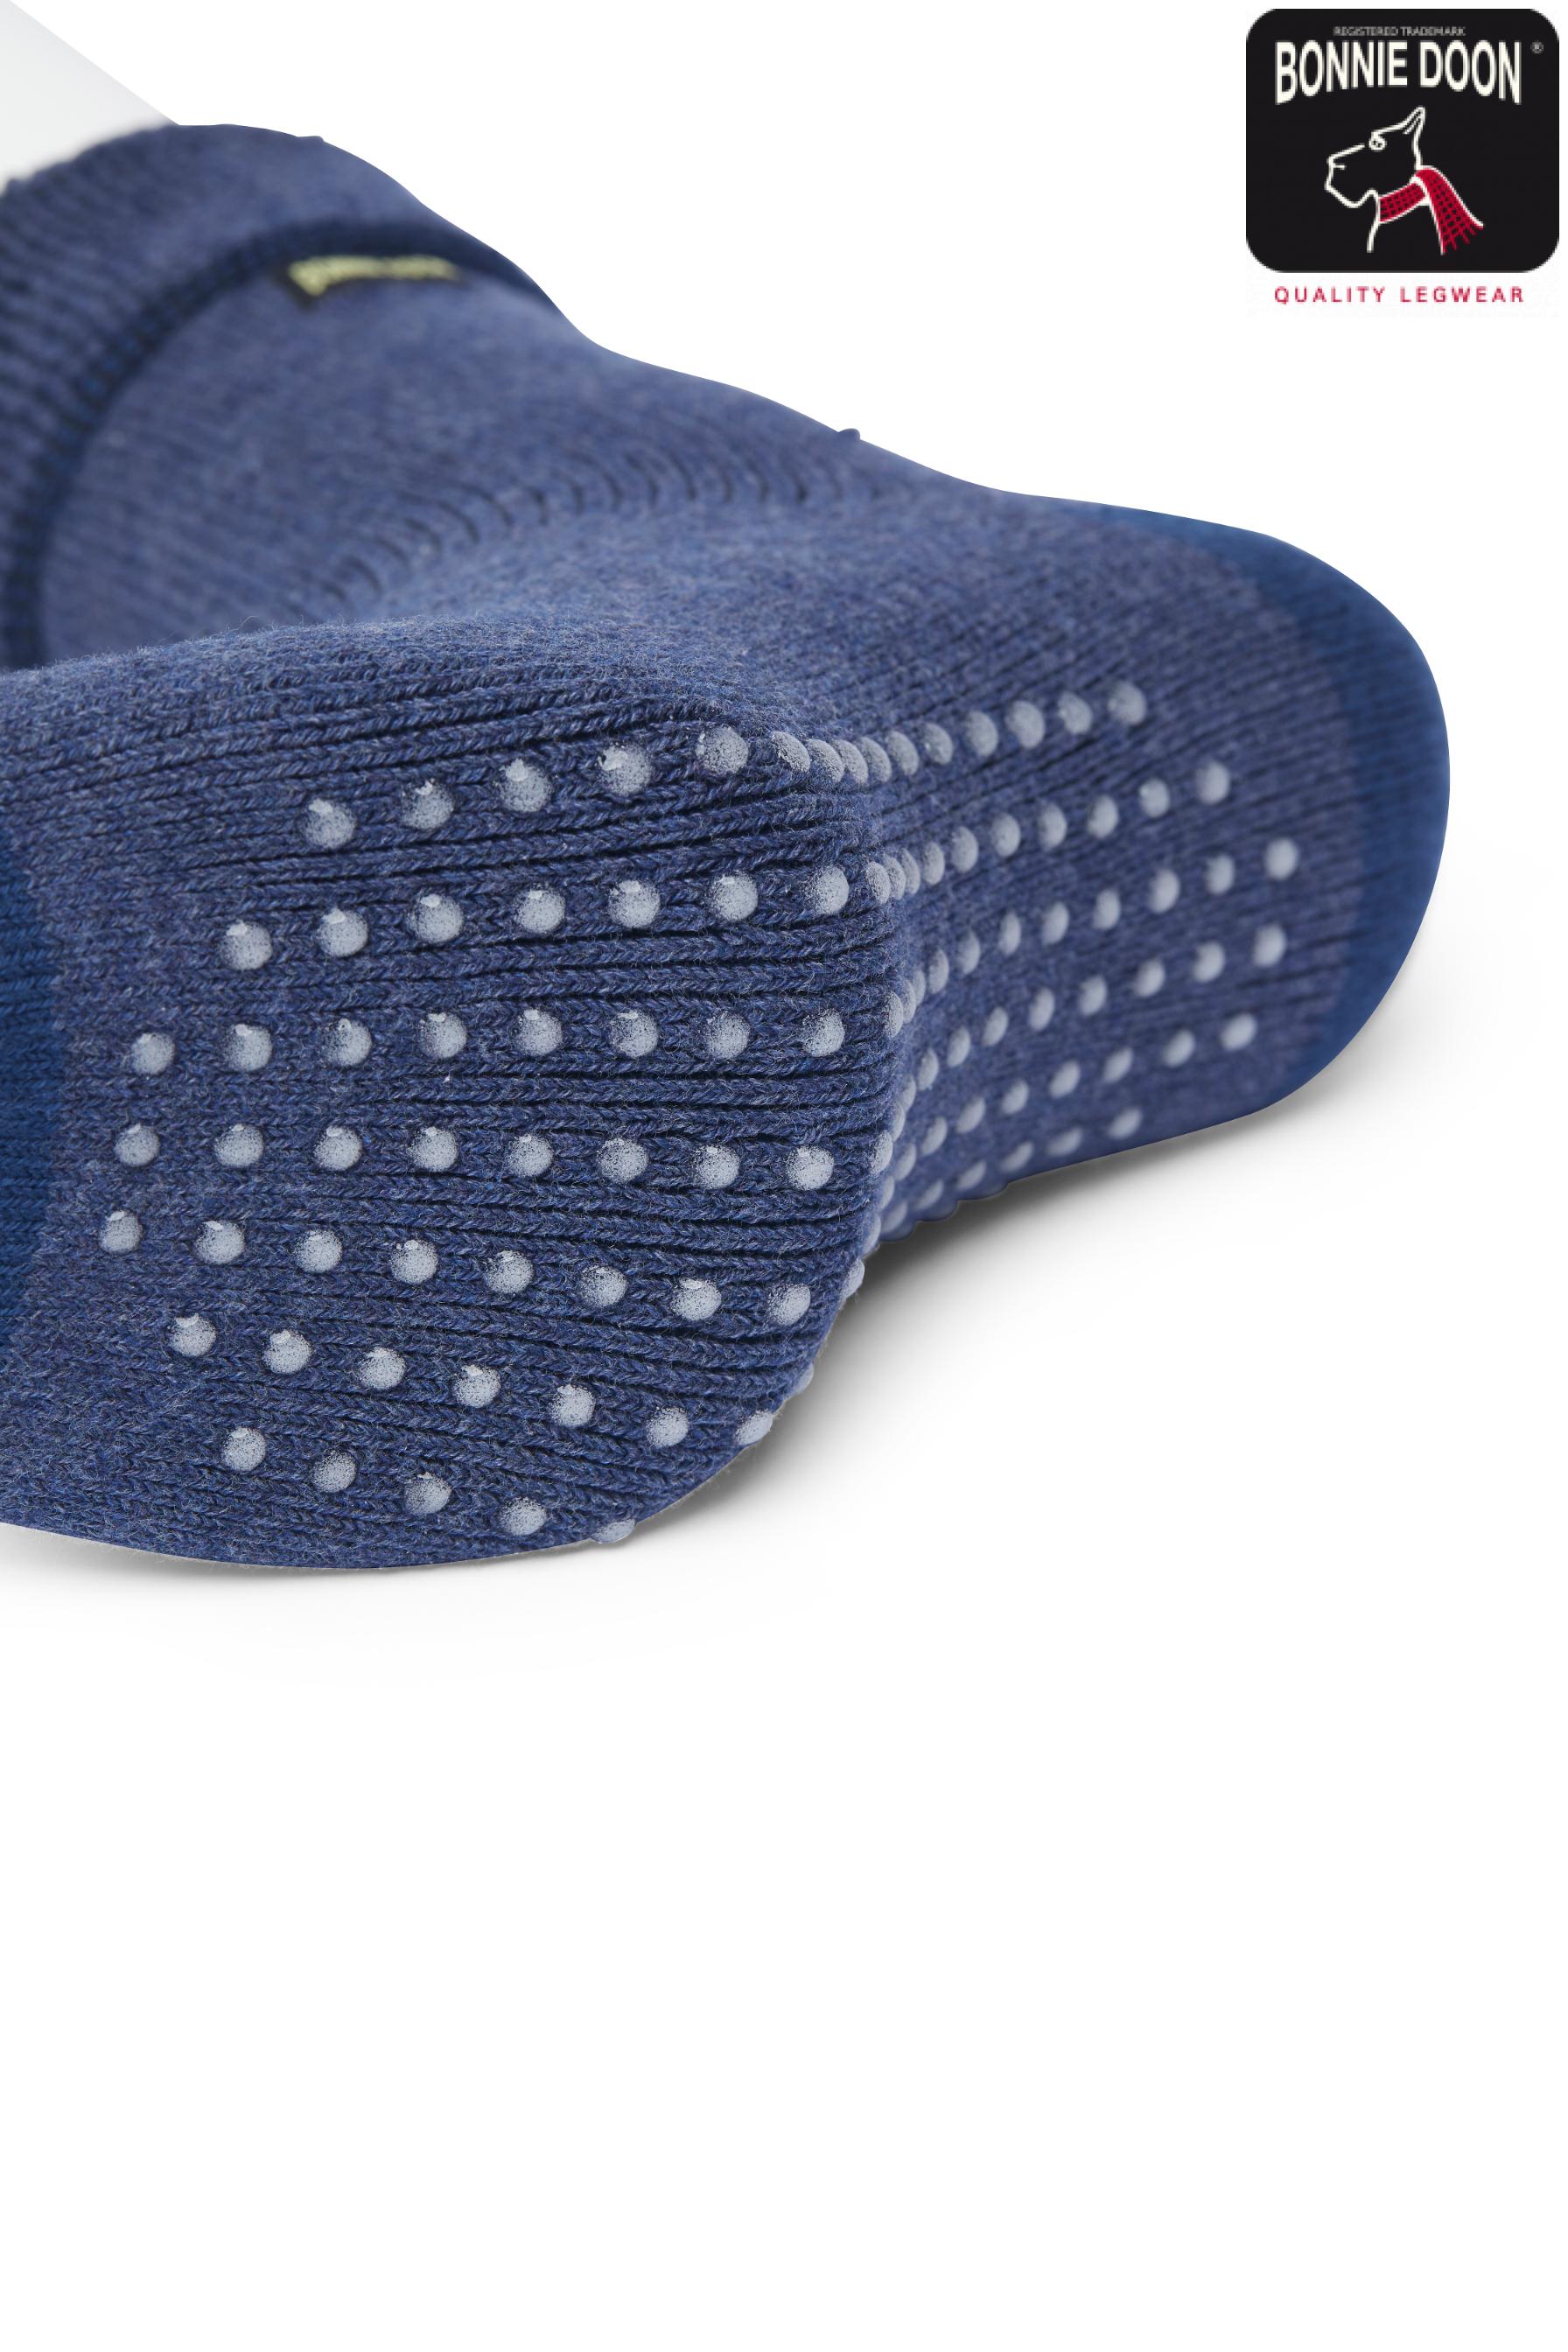 Homewear Anti-Slip sock Medium grey heather